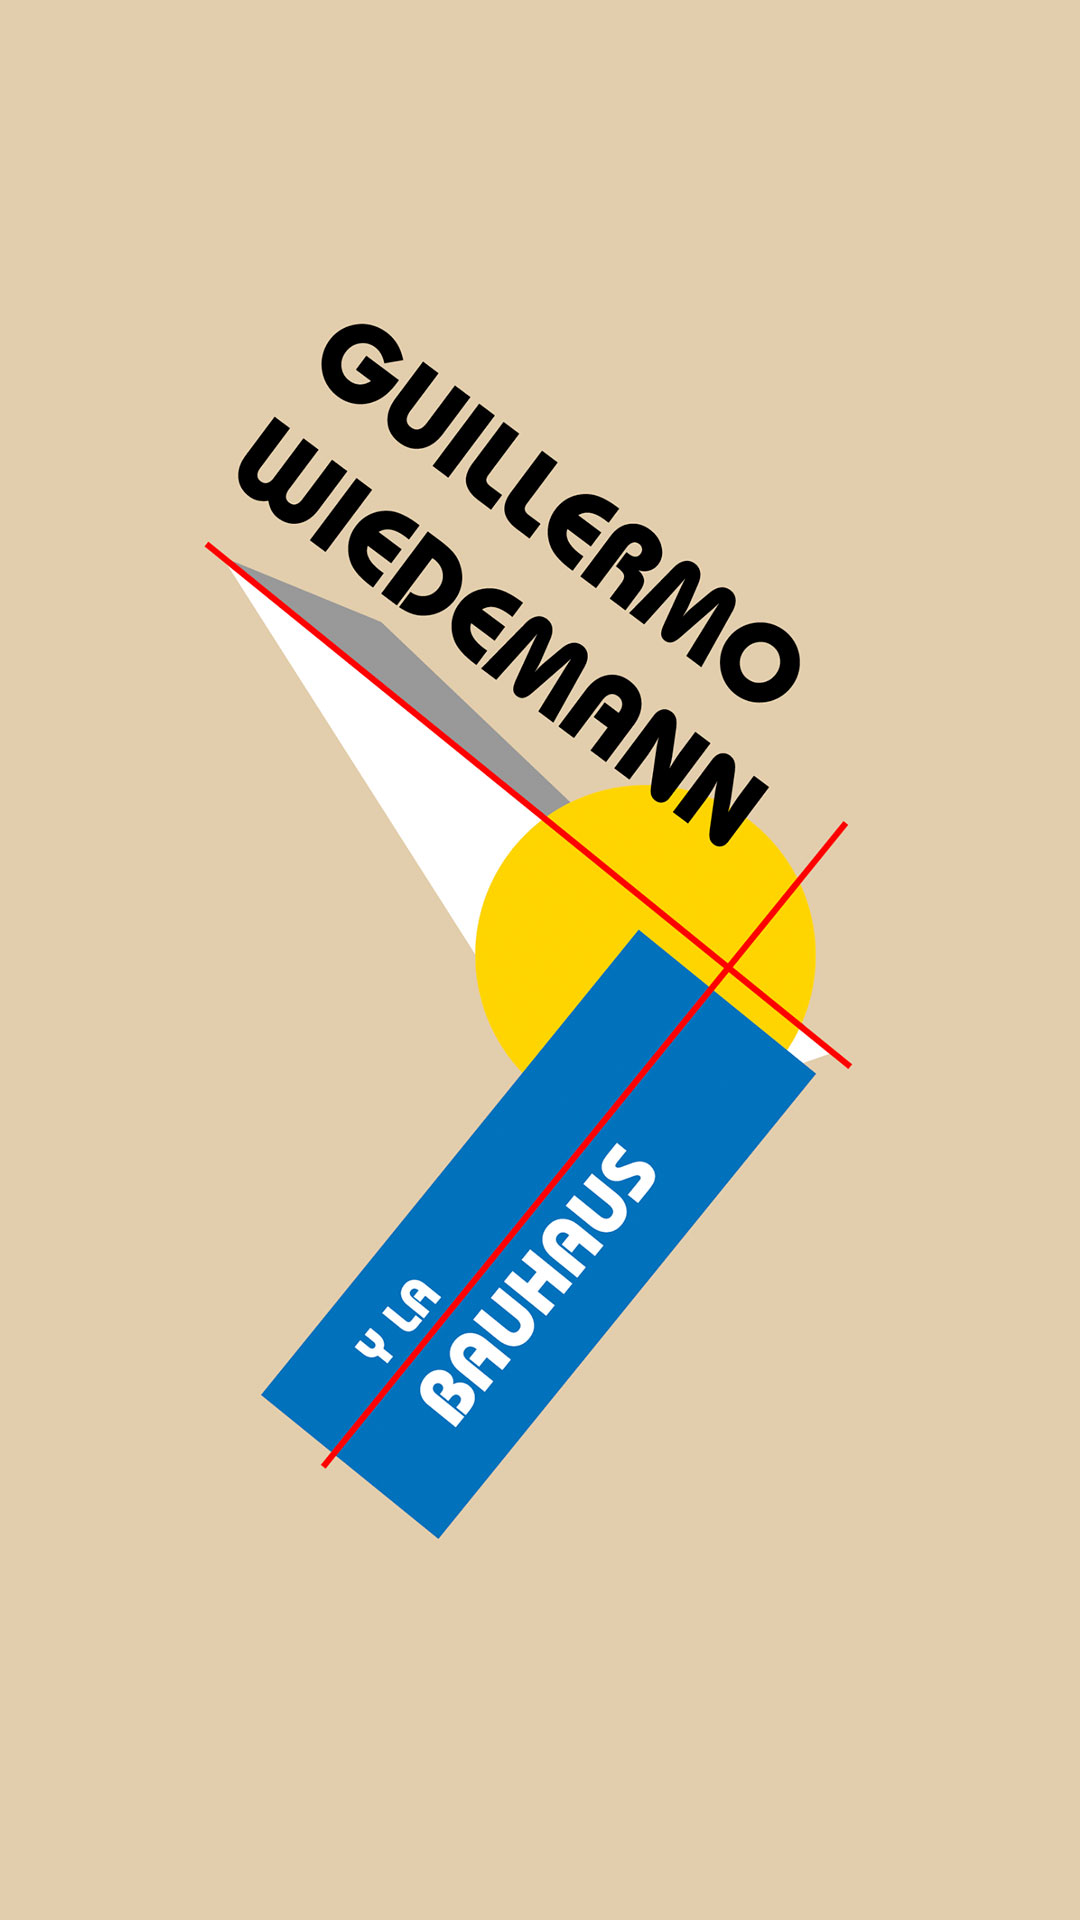 Guillermo Wiedemann y la Bauhaus